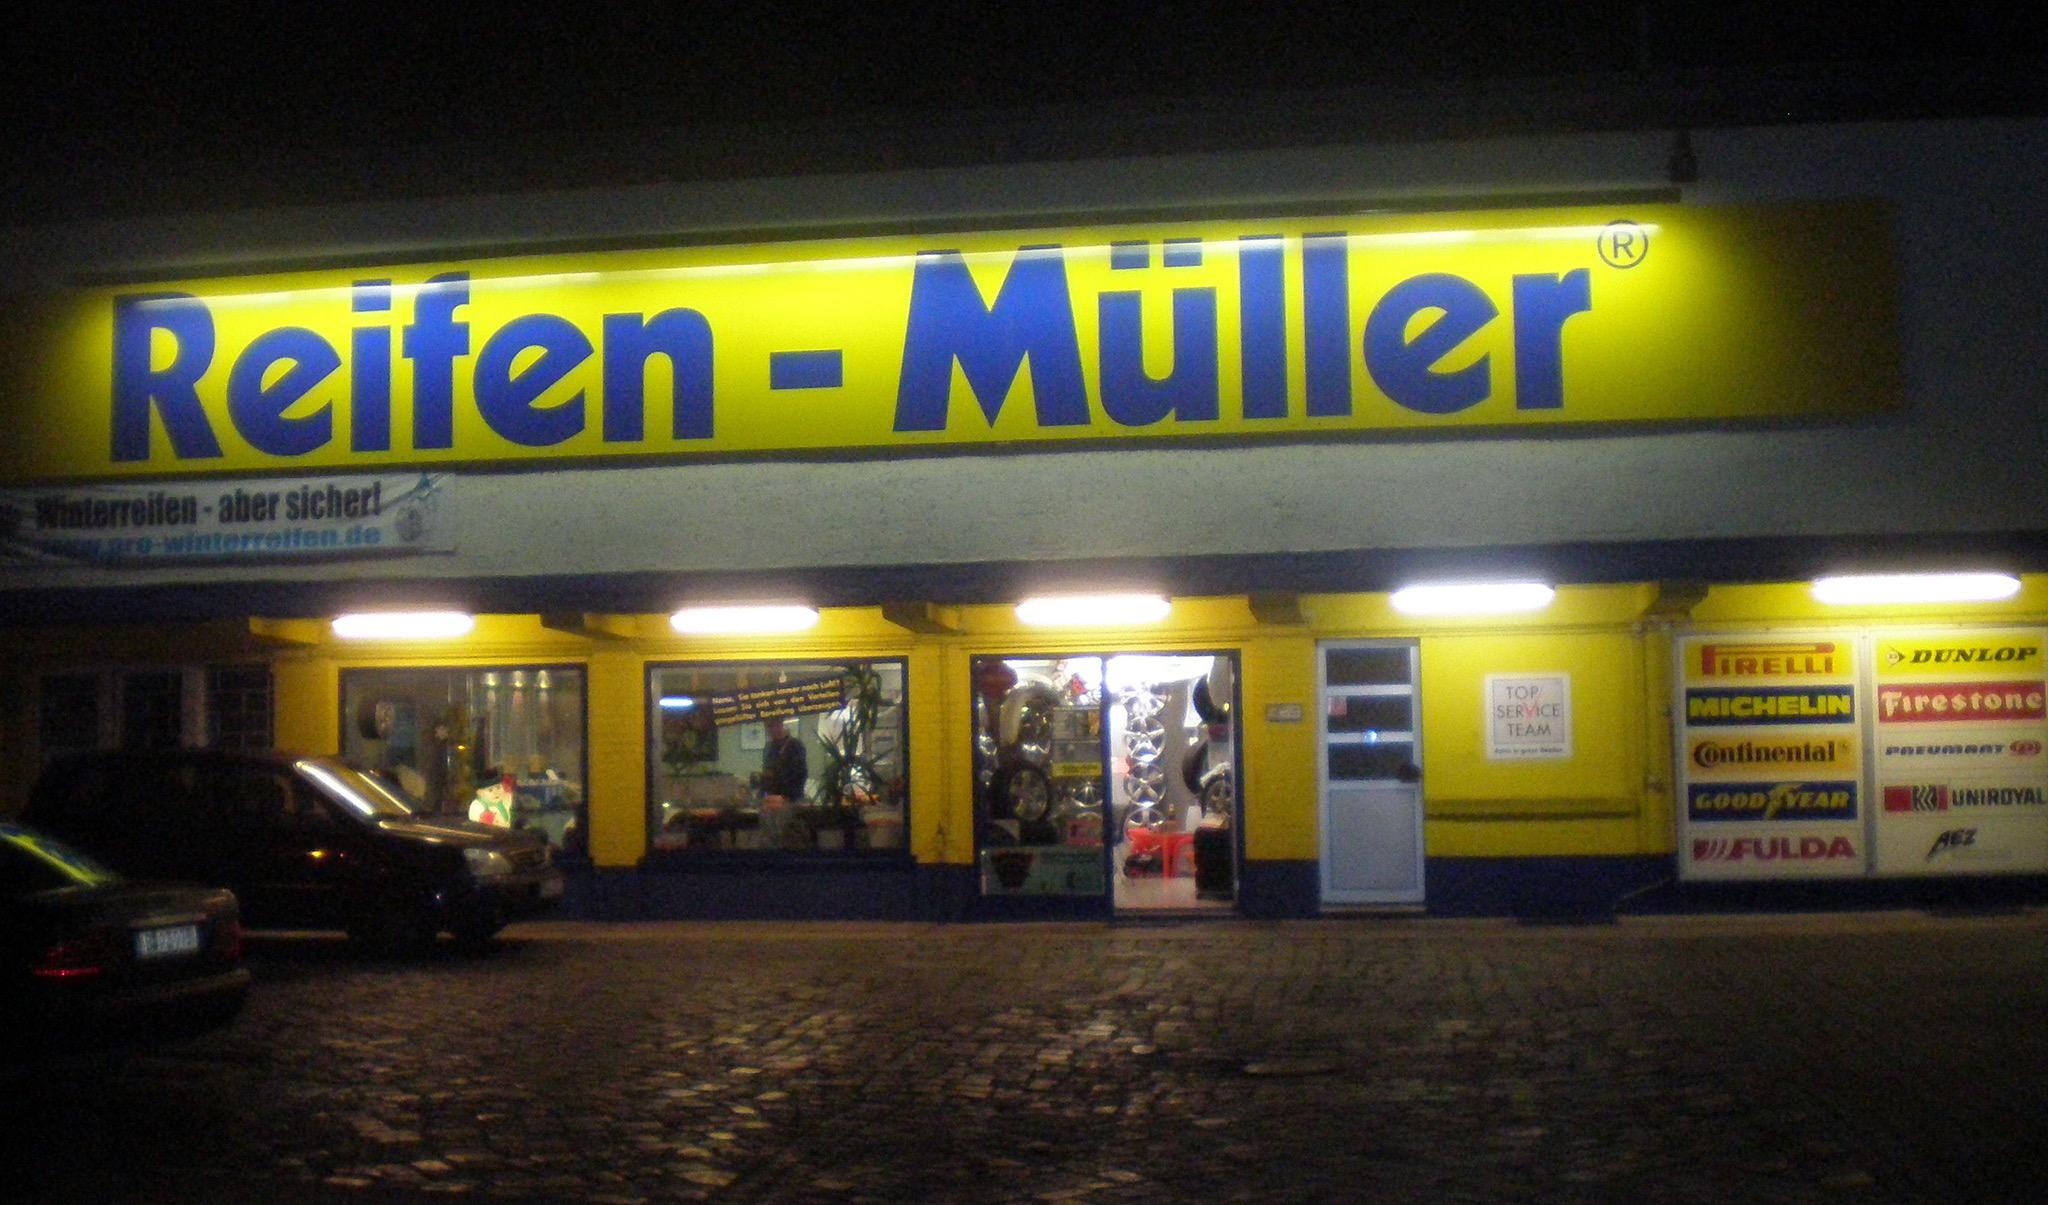 Reifen-Müller, Georg Müller GmbH & Co.KG Berlin 030 44725066